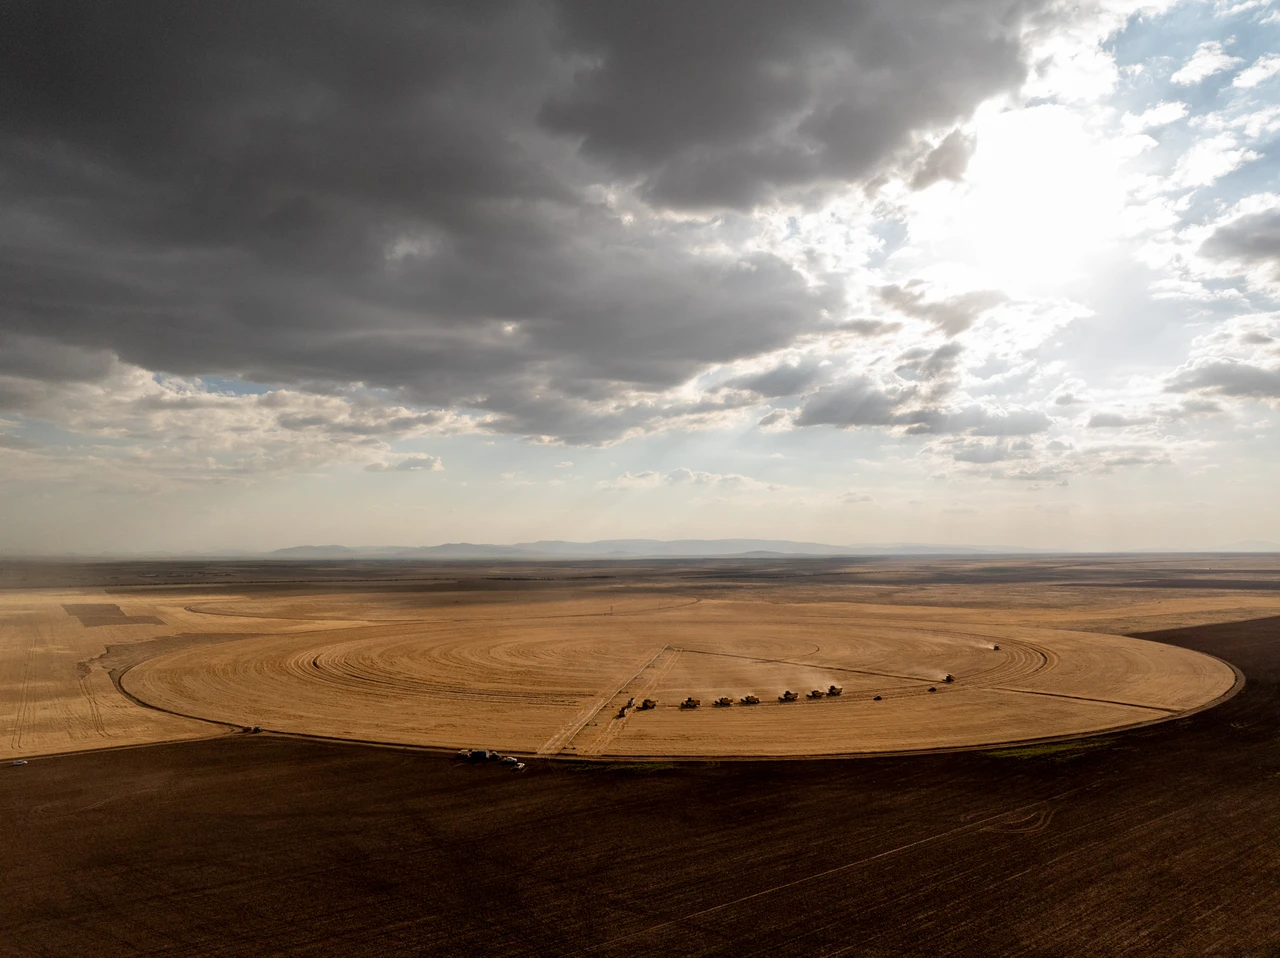 A feast for eyes: Harvest begins in Konya's gigantic circular fields